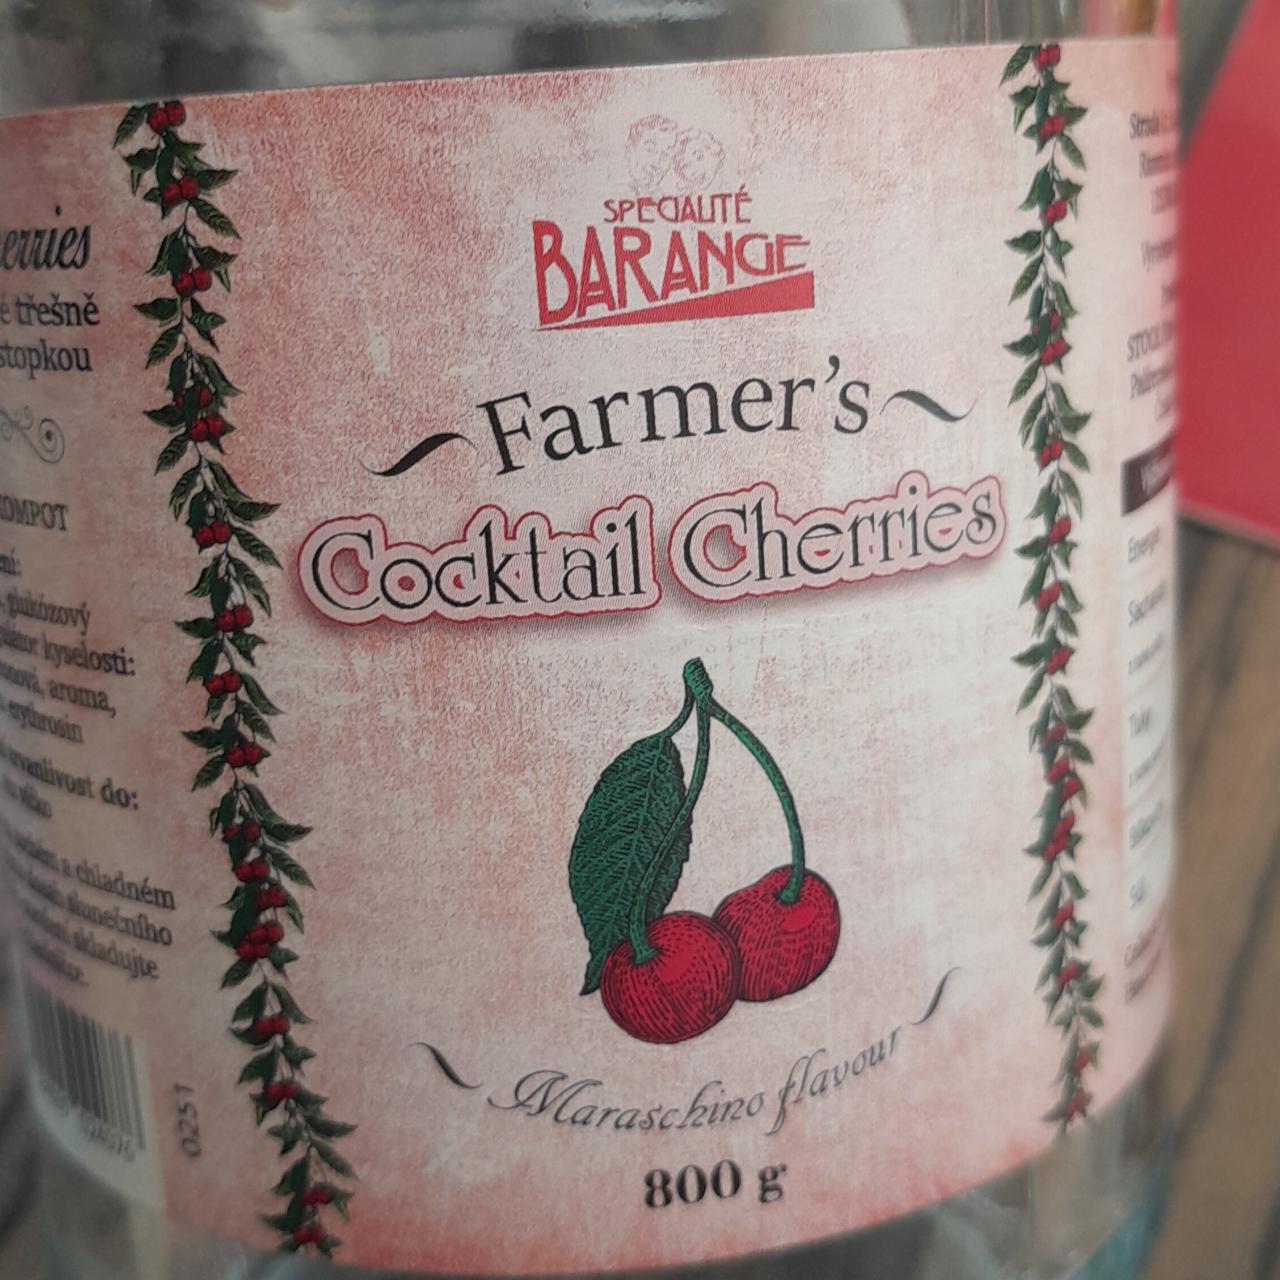 Fotografie - Farmer's cocktail cherries Specialité Barange